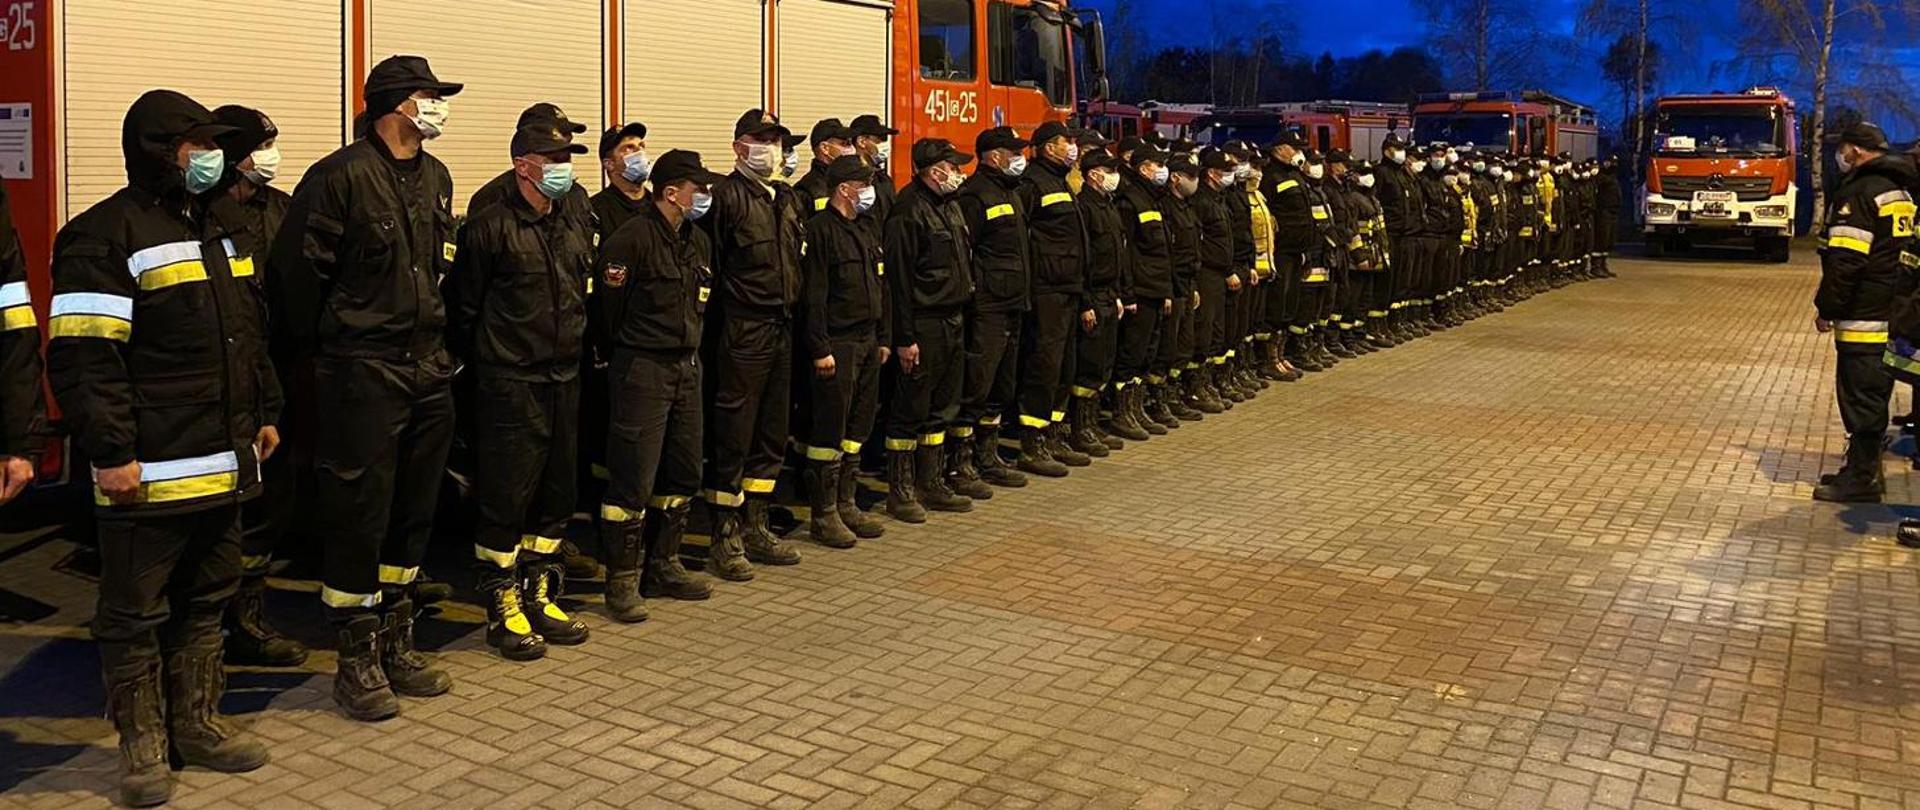 Od lewej części zdjęcia stojący w dwuszeregu strażacy PSP w czarnych ubraniach koszarowych, wszyscy mają maseczki na twarzy. W tle wozy strażackie. 